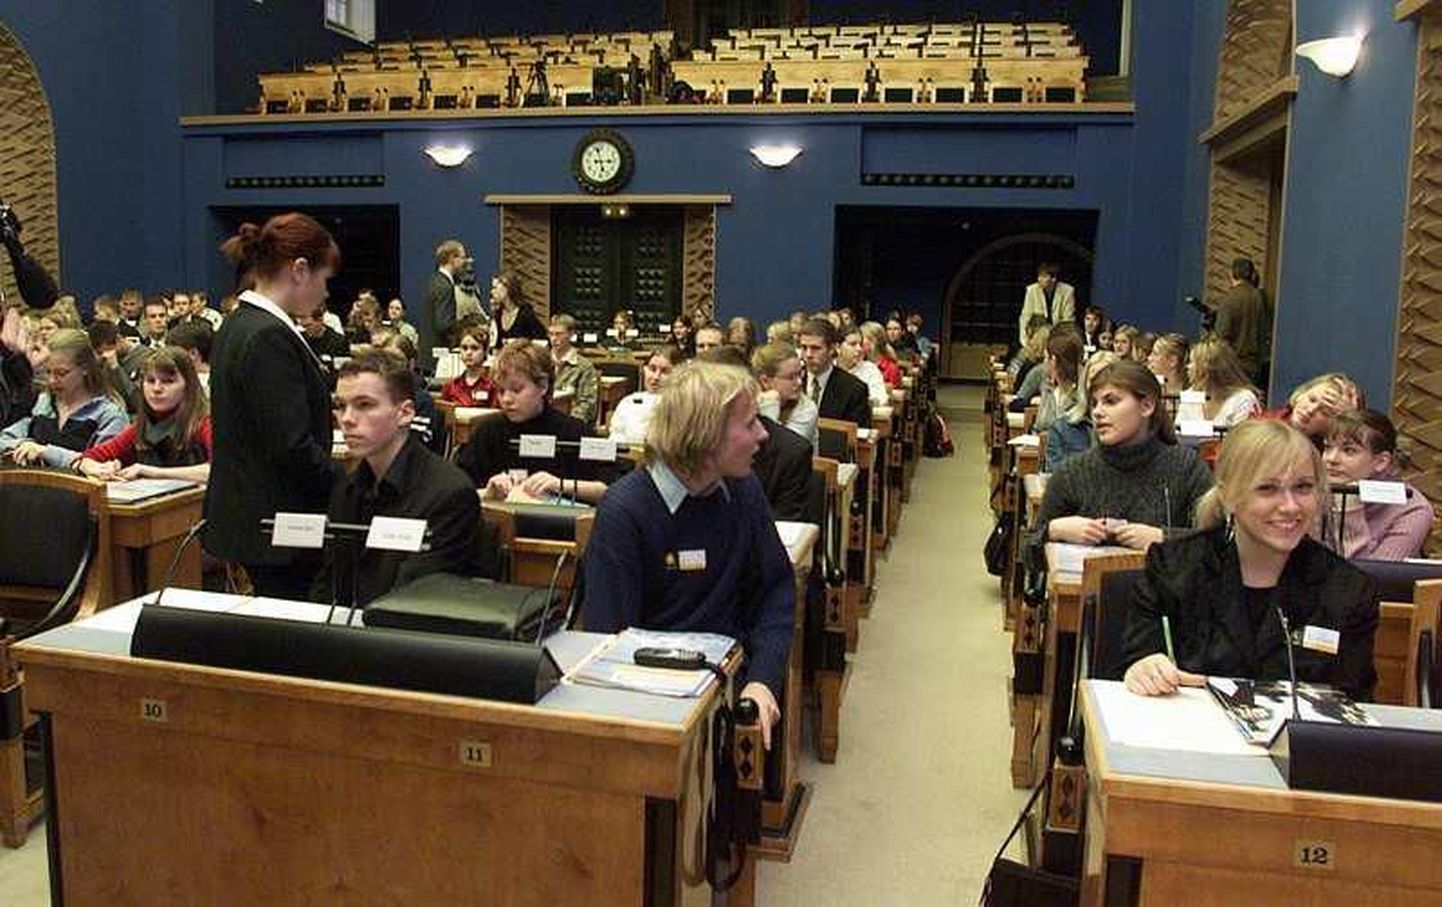 TLNPM03: ÕPILASED RIIGIKOGUS : TALLINN, EESTI, 22NOV02-
Õpilased Riigikogus. 
lt/ Foto LIIS TREIMANN POSTIMEES